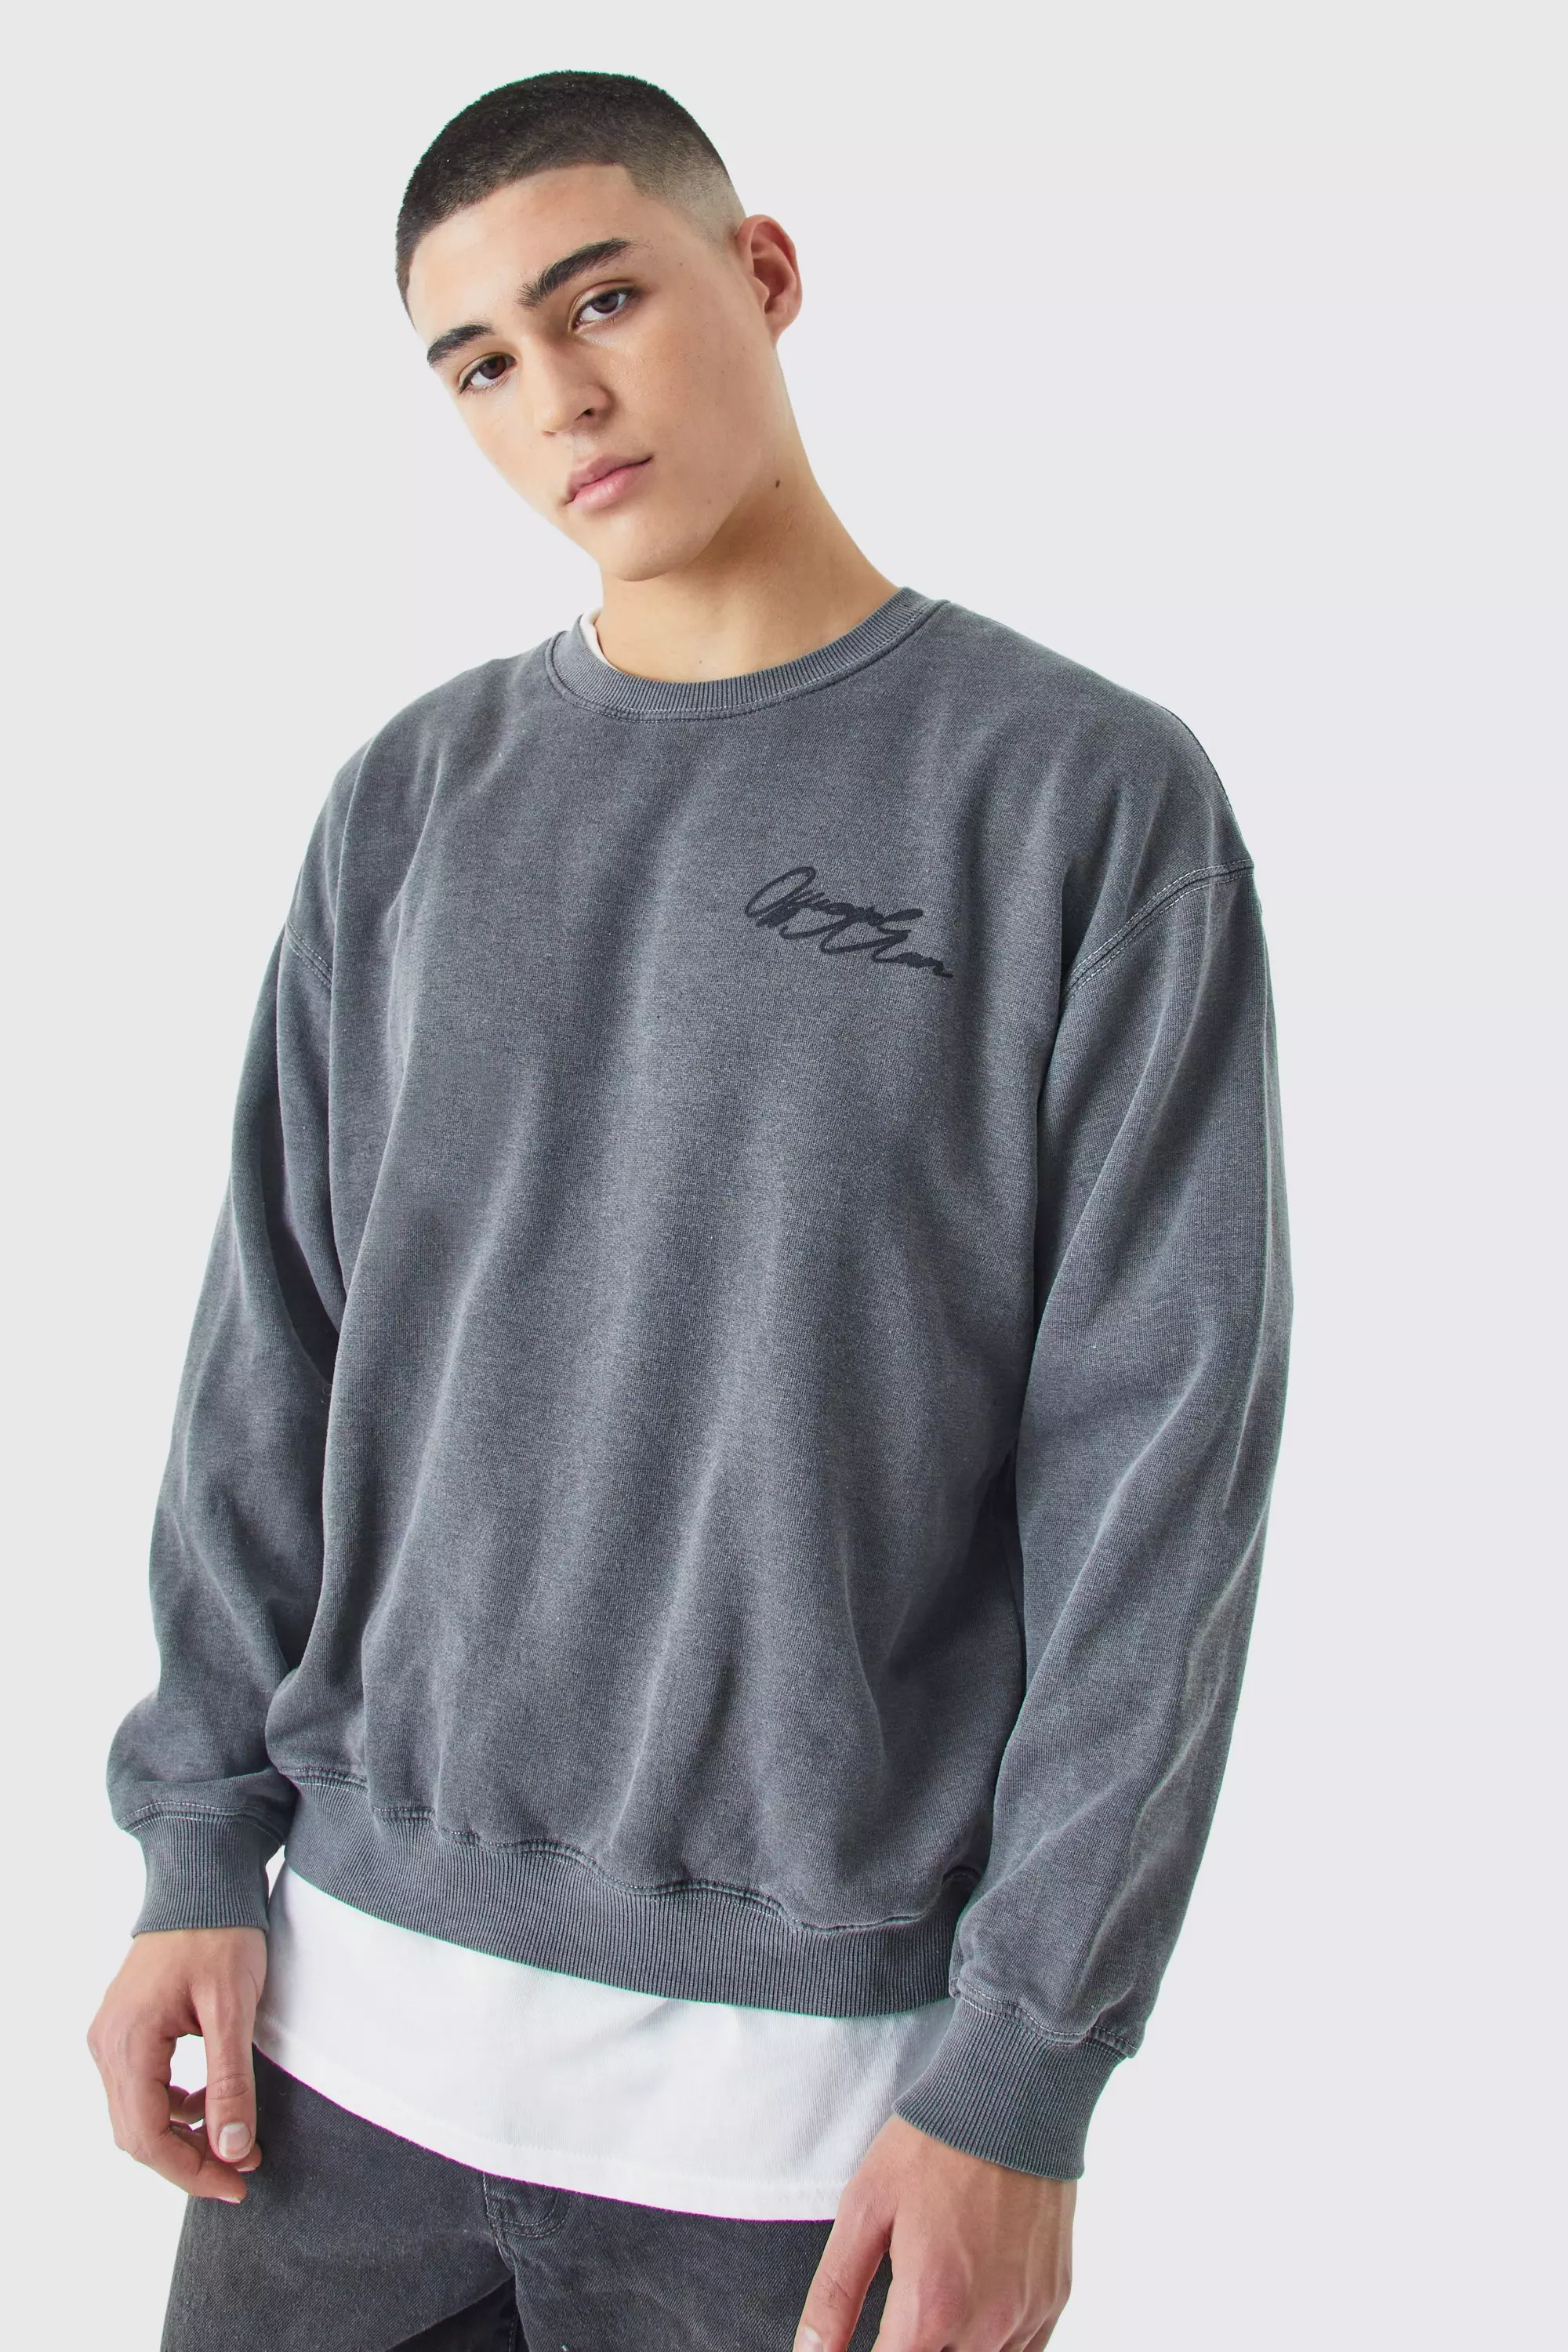 Oversized Acid Wash Man Graphic Sweatshirt Charcoal